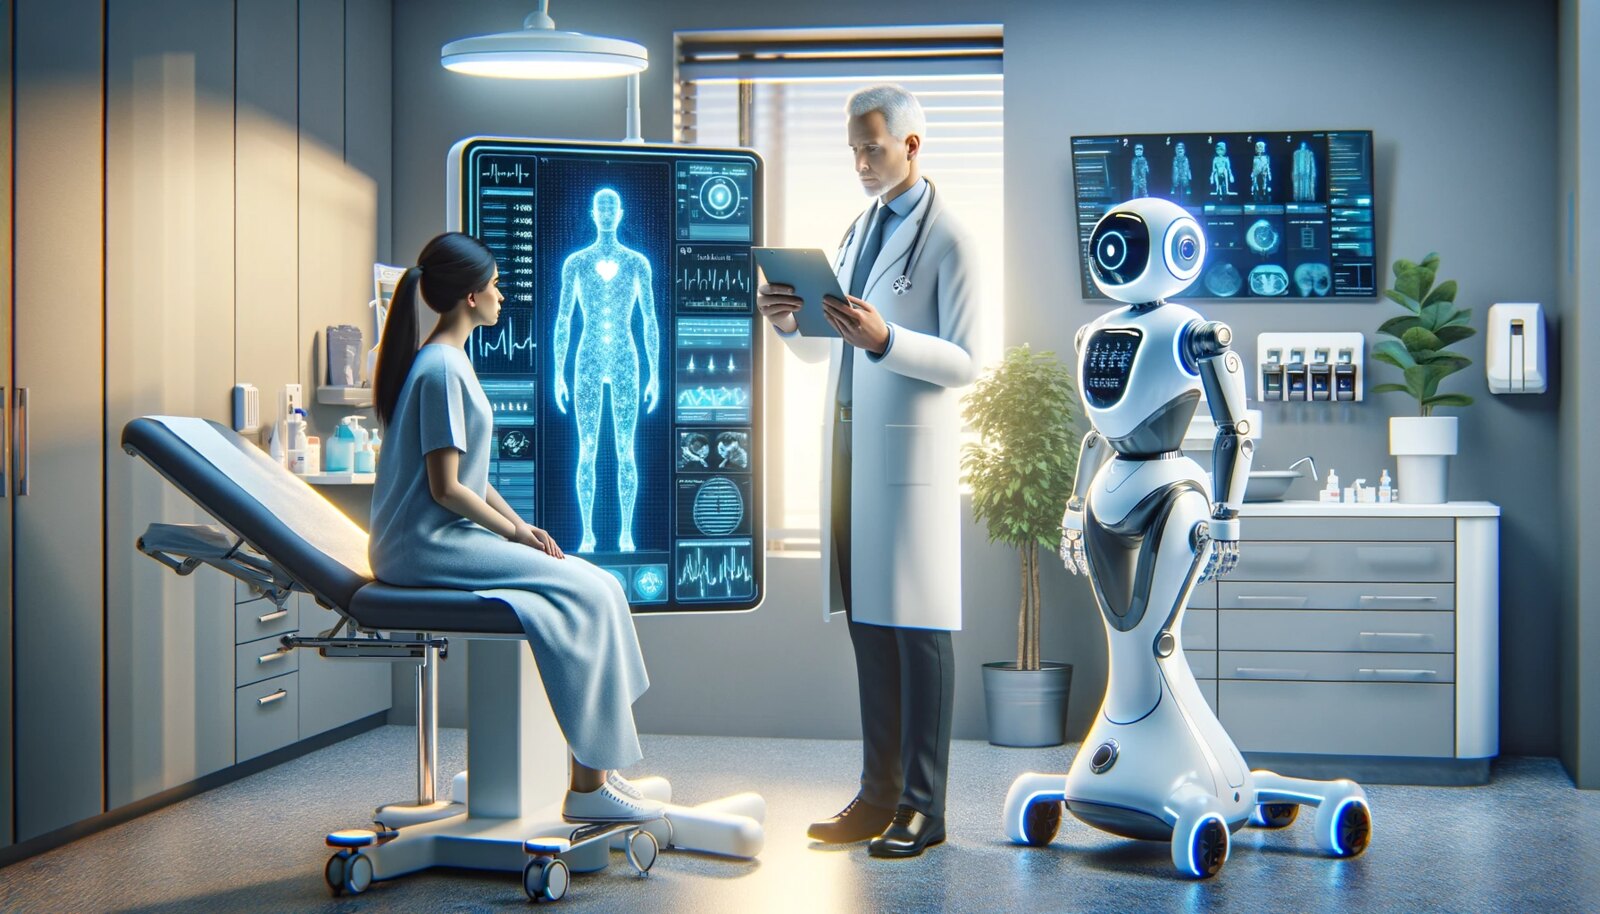 La IA de Google supera a médicos humanos en trato y diagnóstico de pacientes